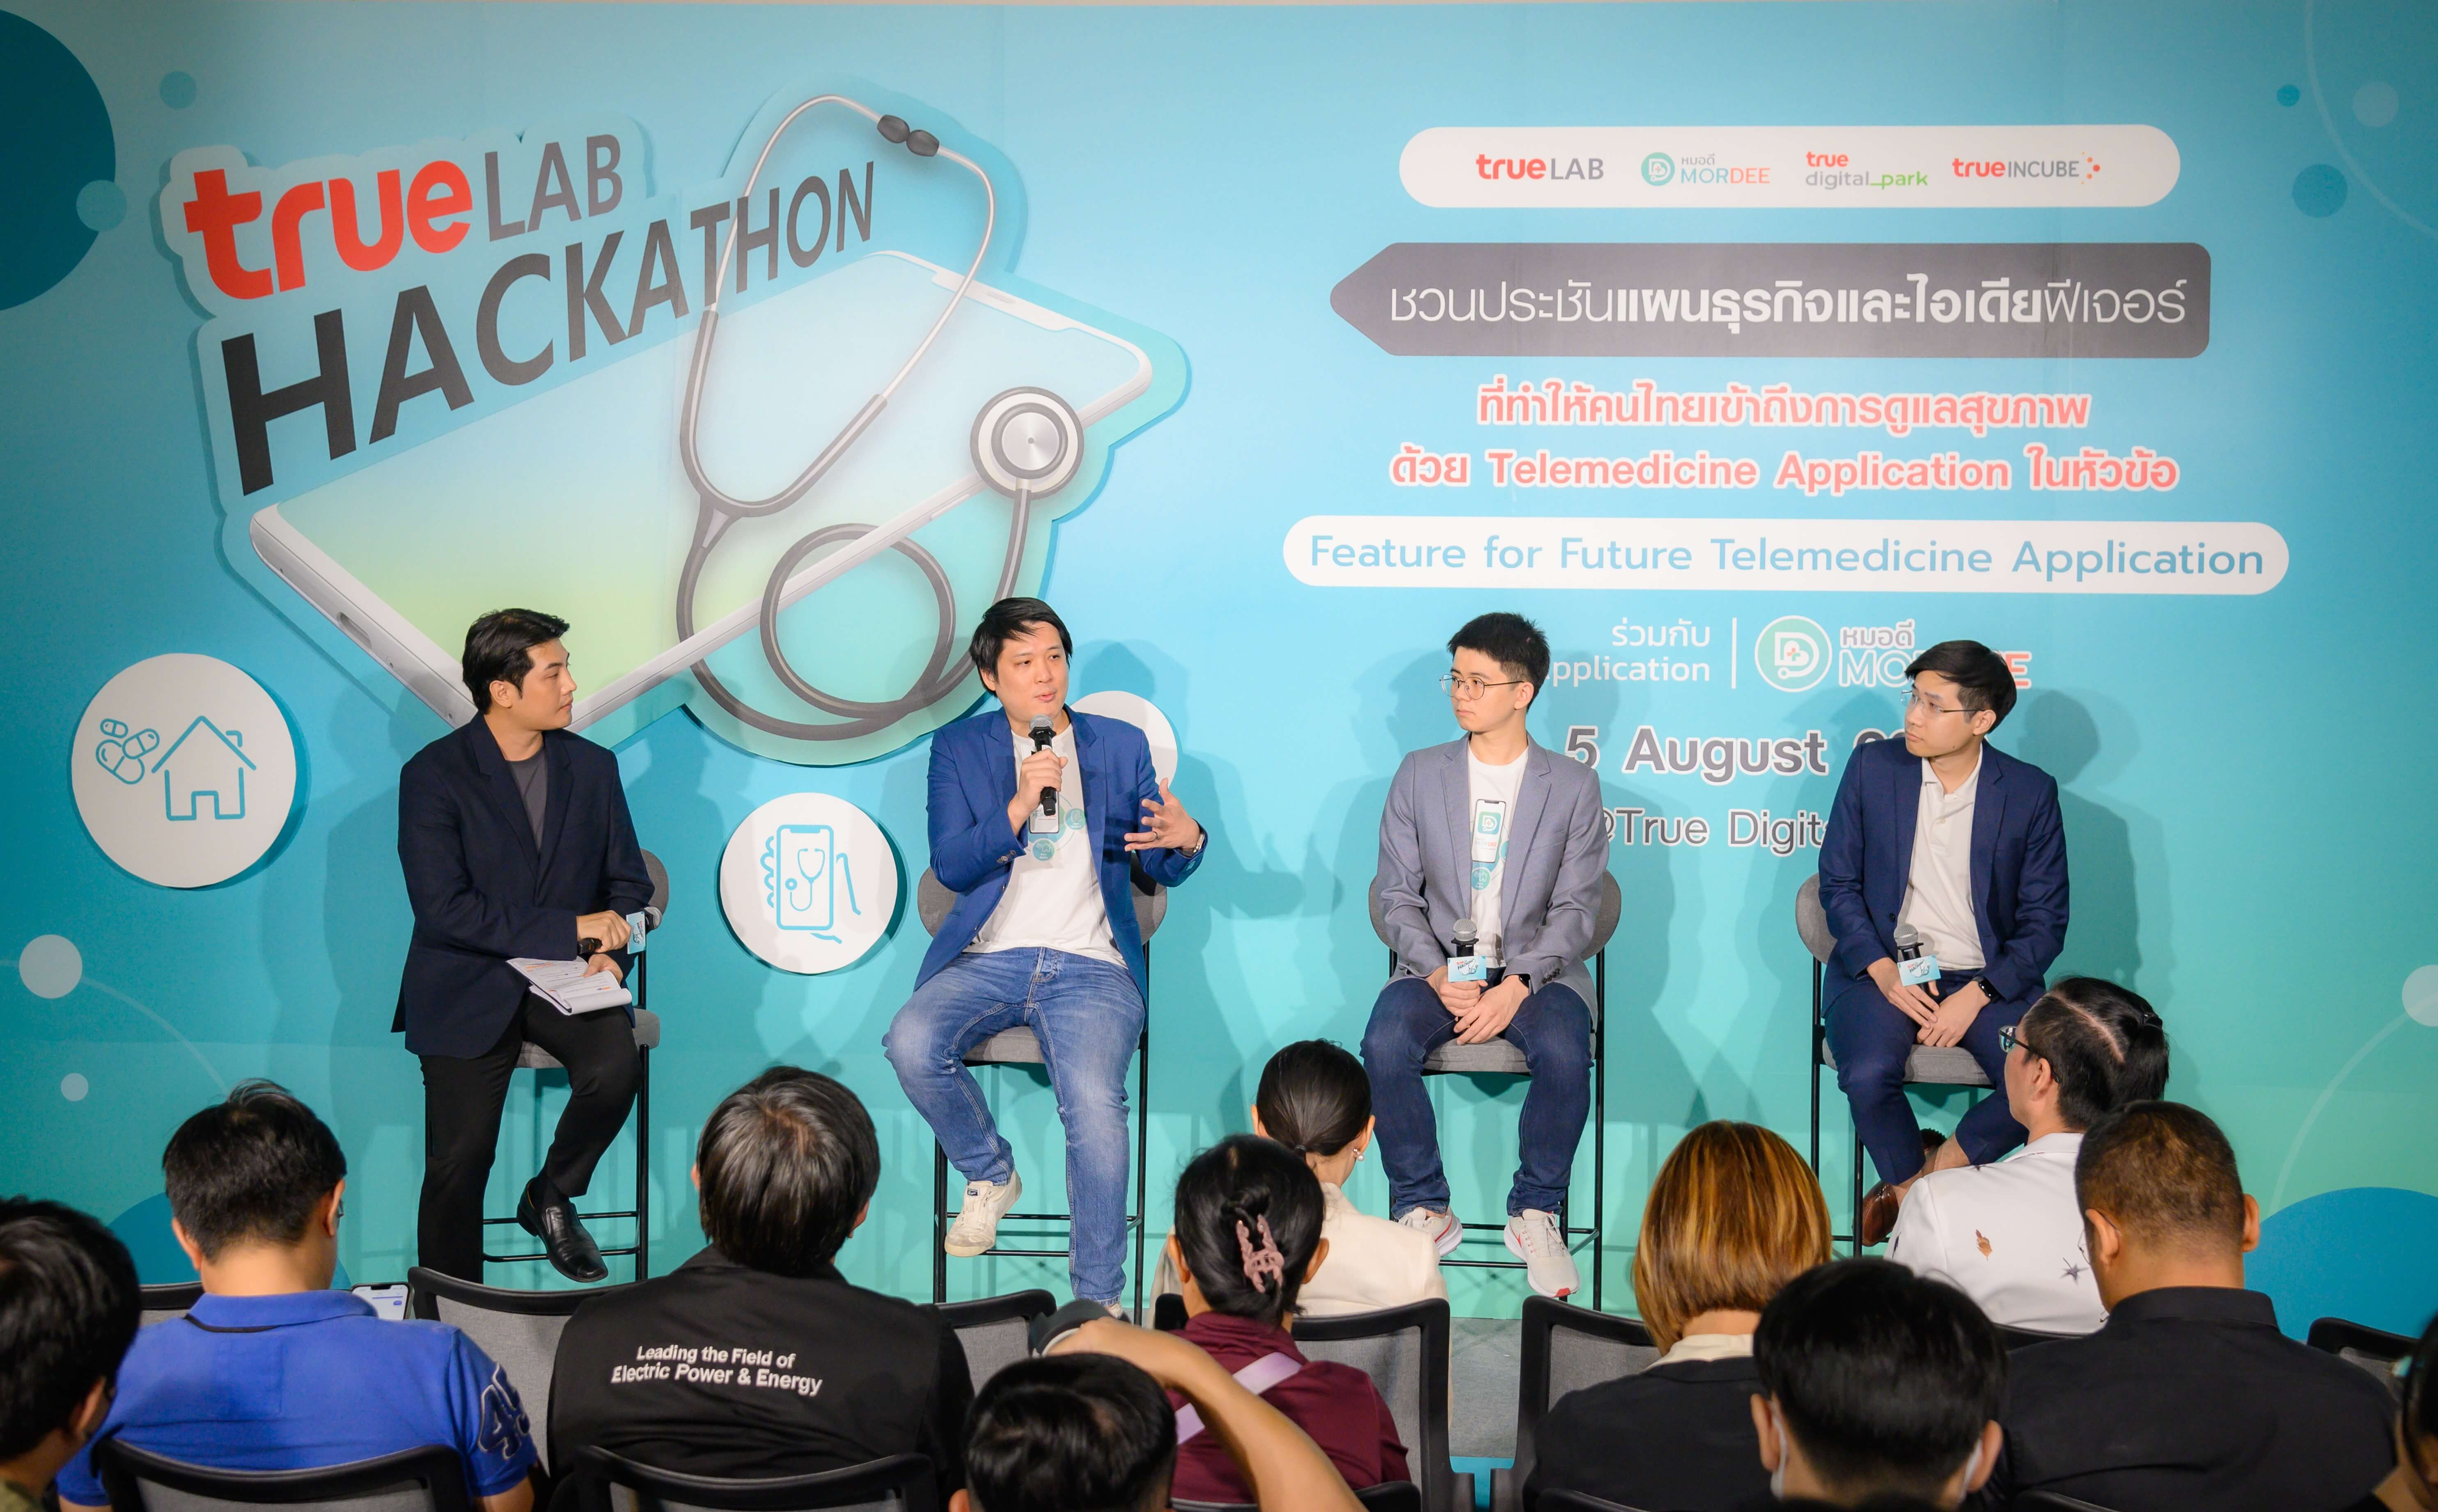 เจาะเทรนด์เทคโนโลยีแพทย์ทางไกลไทย แอปหมอดีชี้ AI อุปกรณ์สวมใส่และ IoT ช่วยติดตาม ดูแล รักษาคนไข้ได้รวดเร็วและแม่นยำ